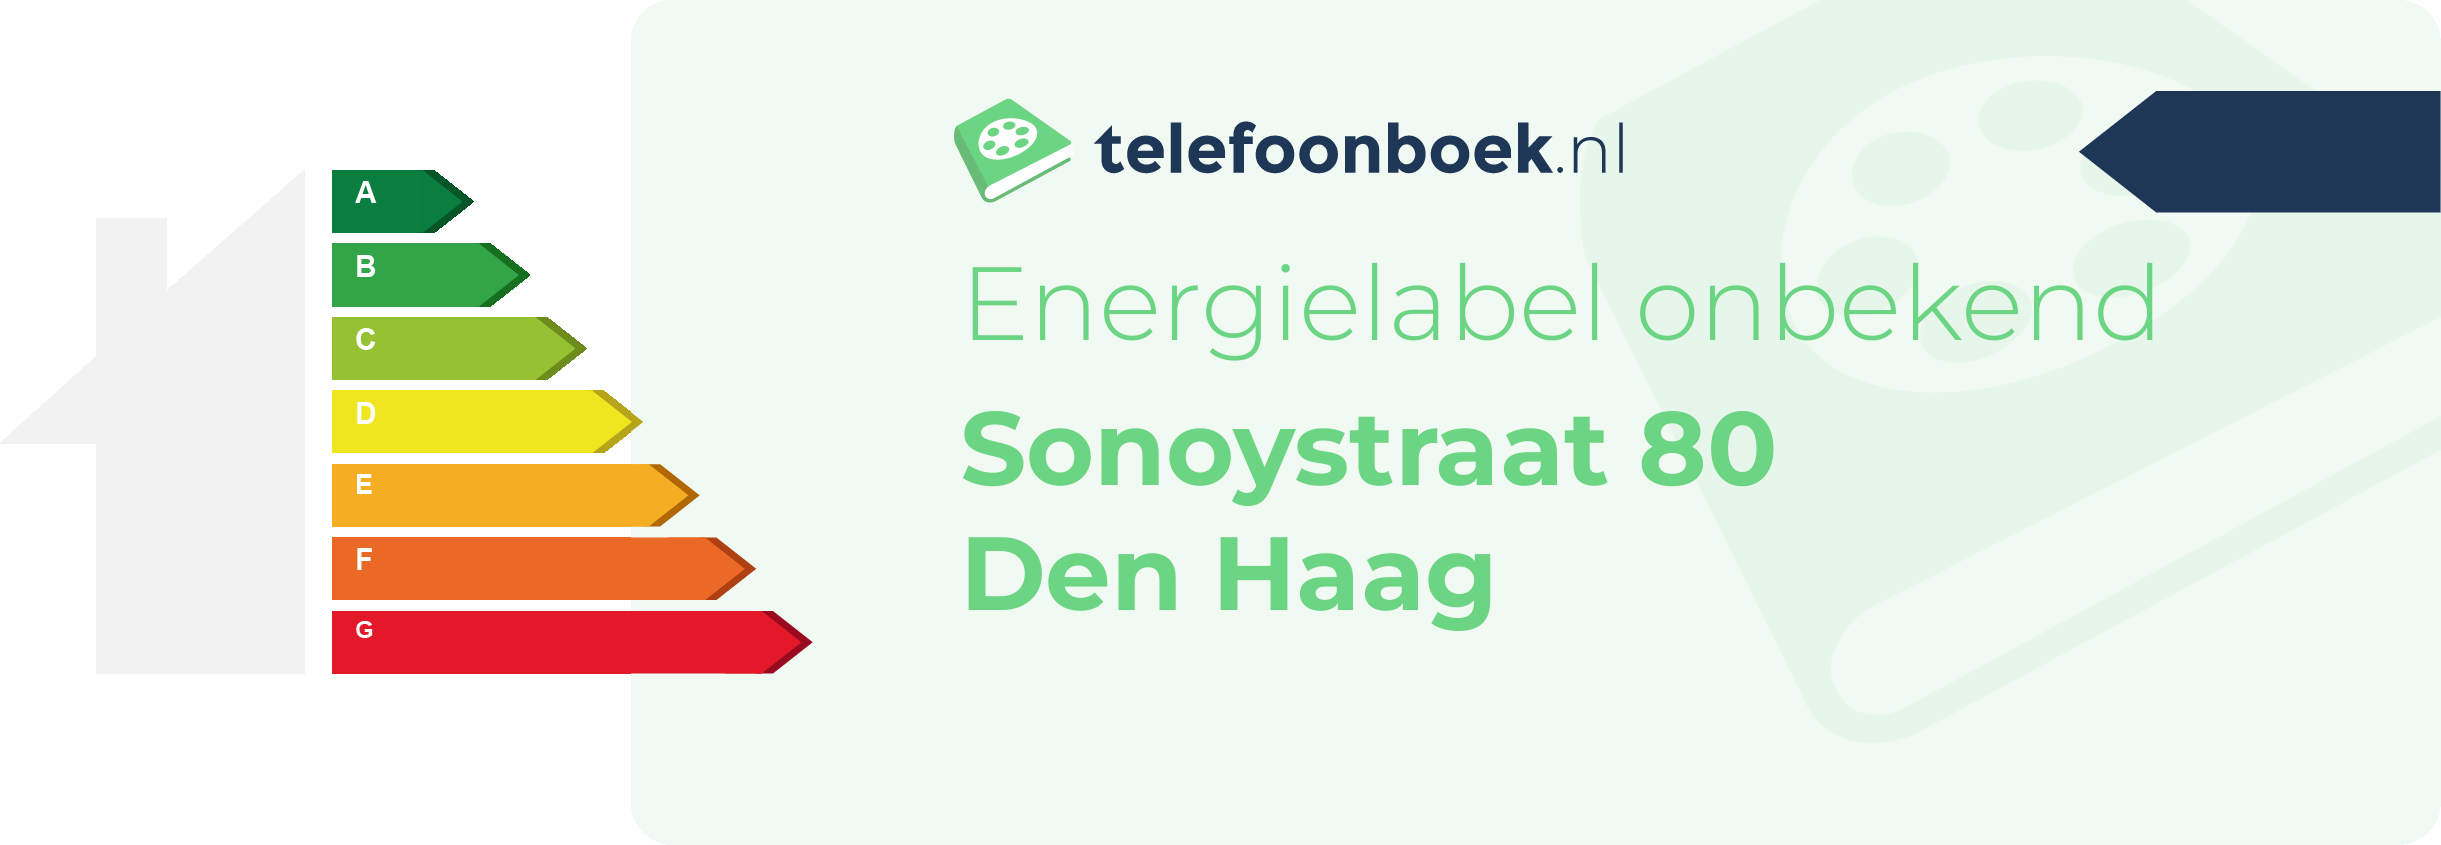 Energielabel Sonoystraat 80 Den Haag